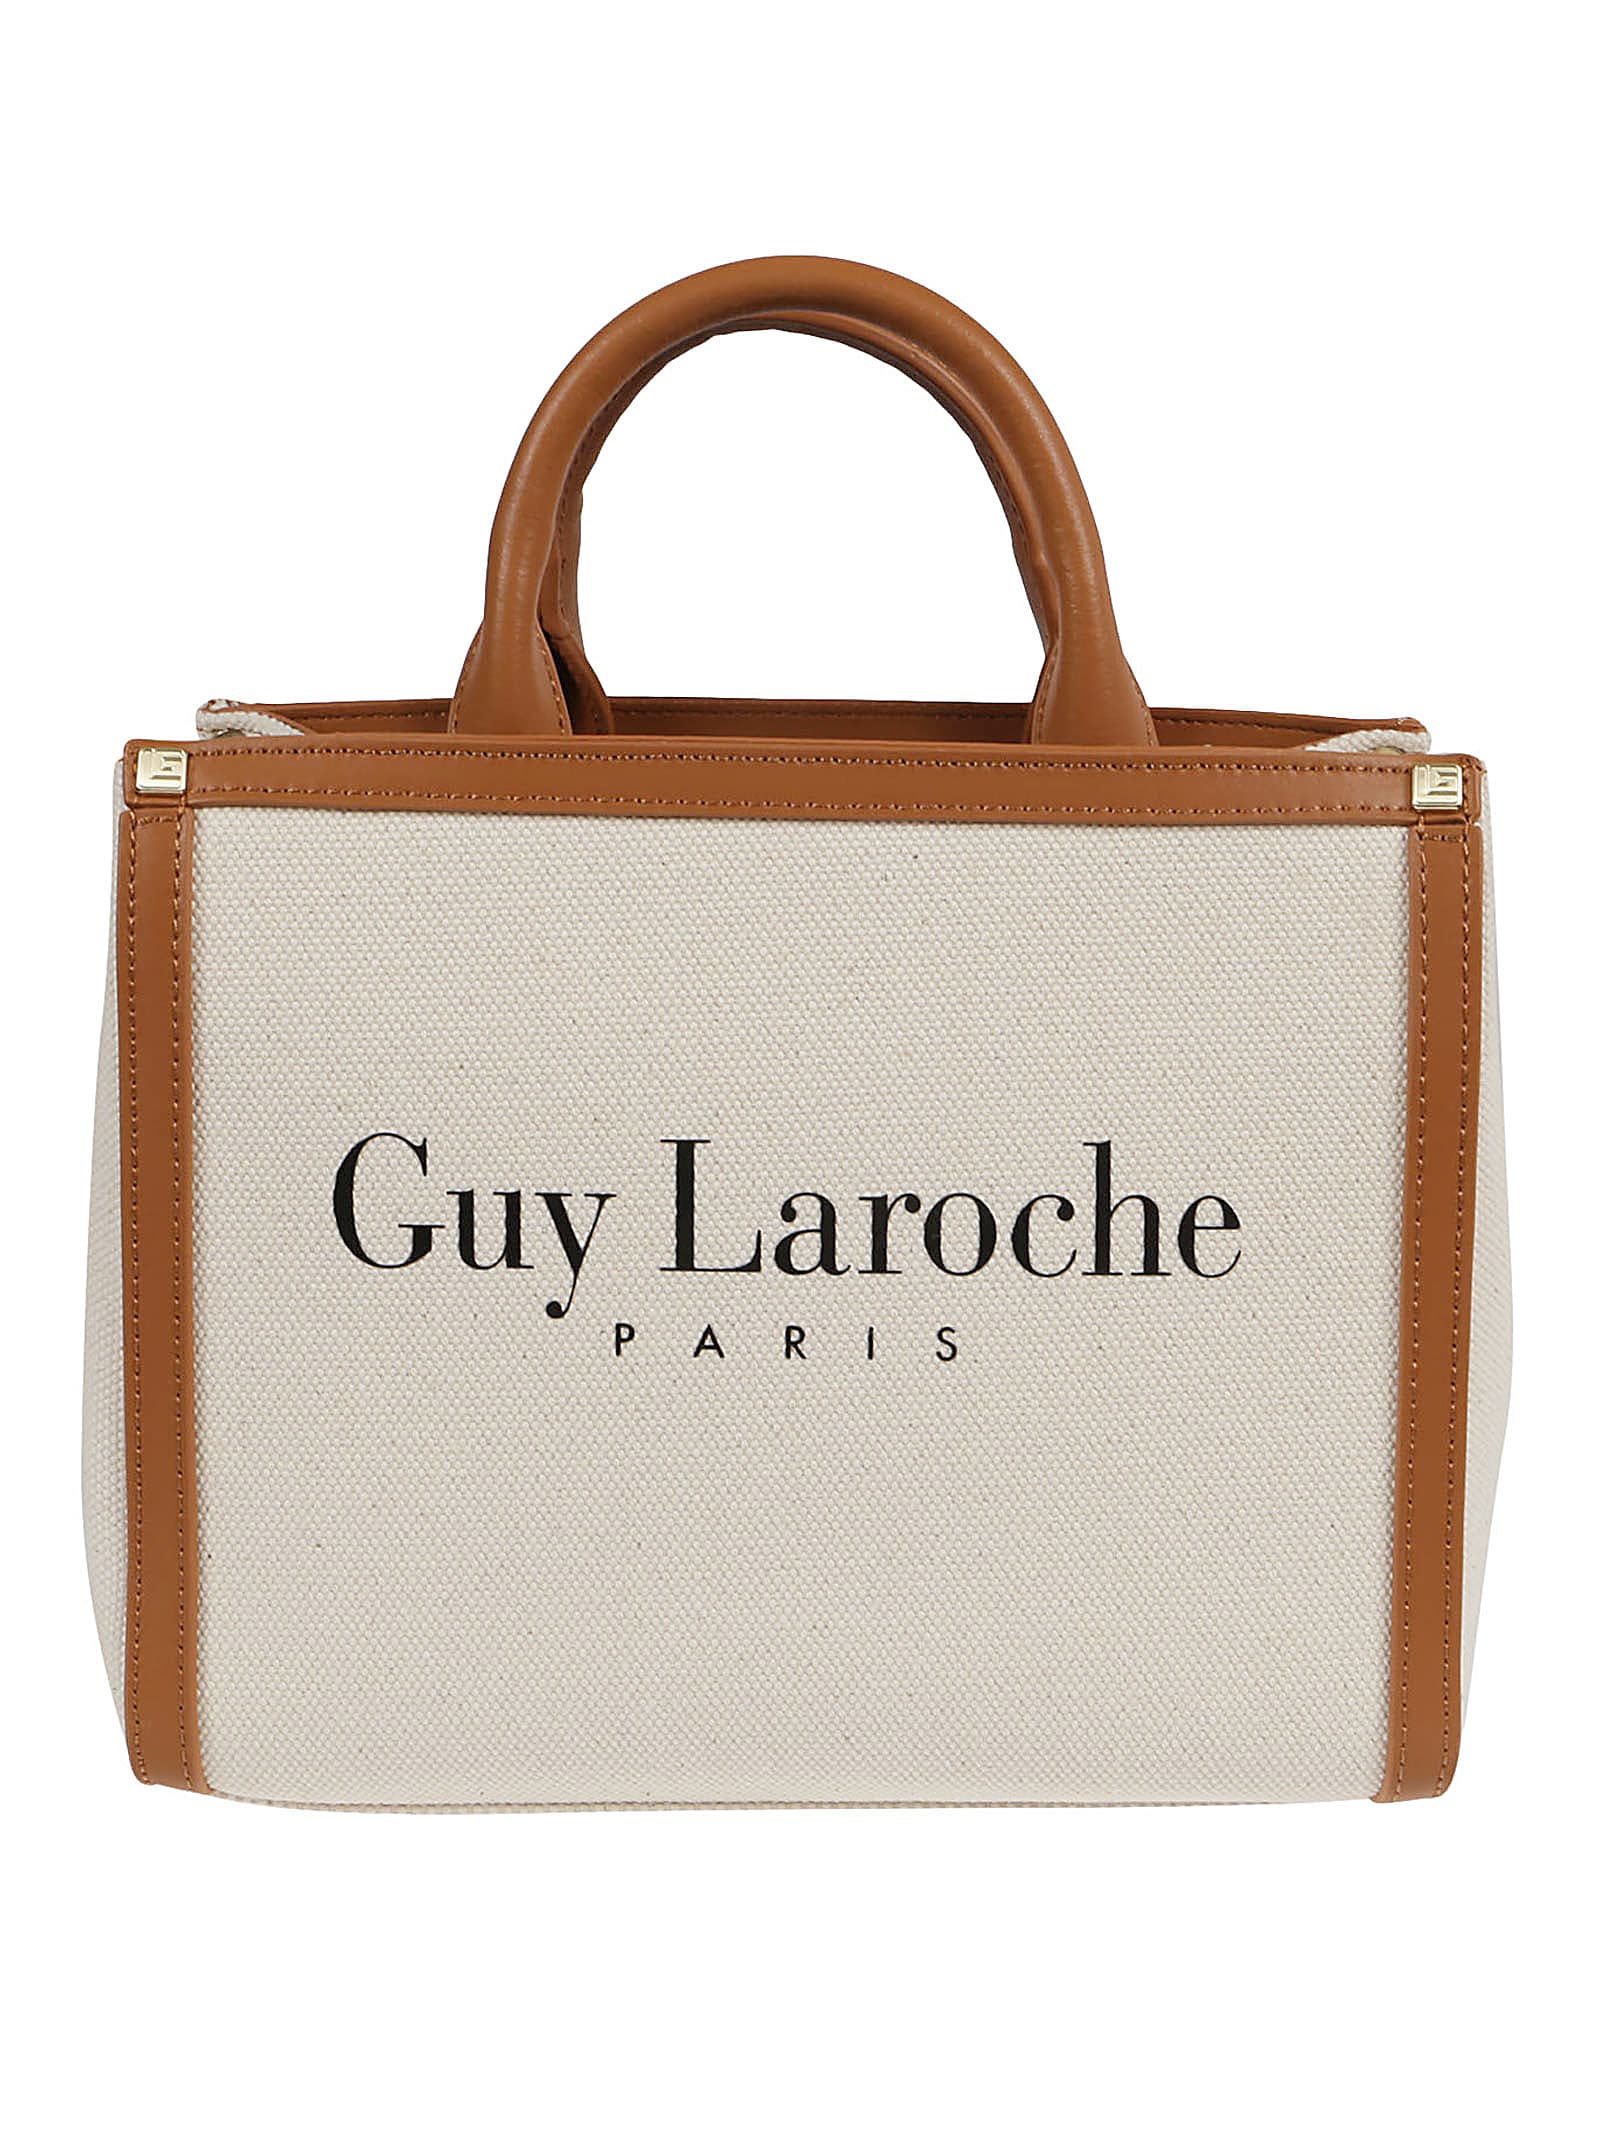 Guy Laroche Small Tote Bag In Beige+cuoio